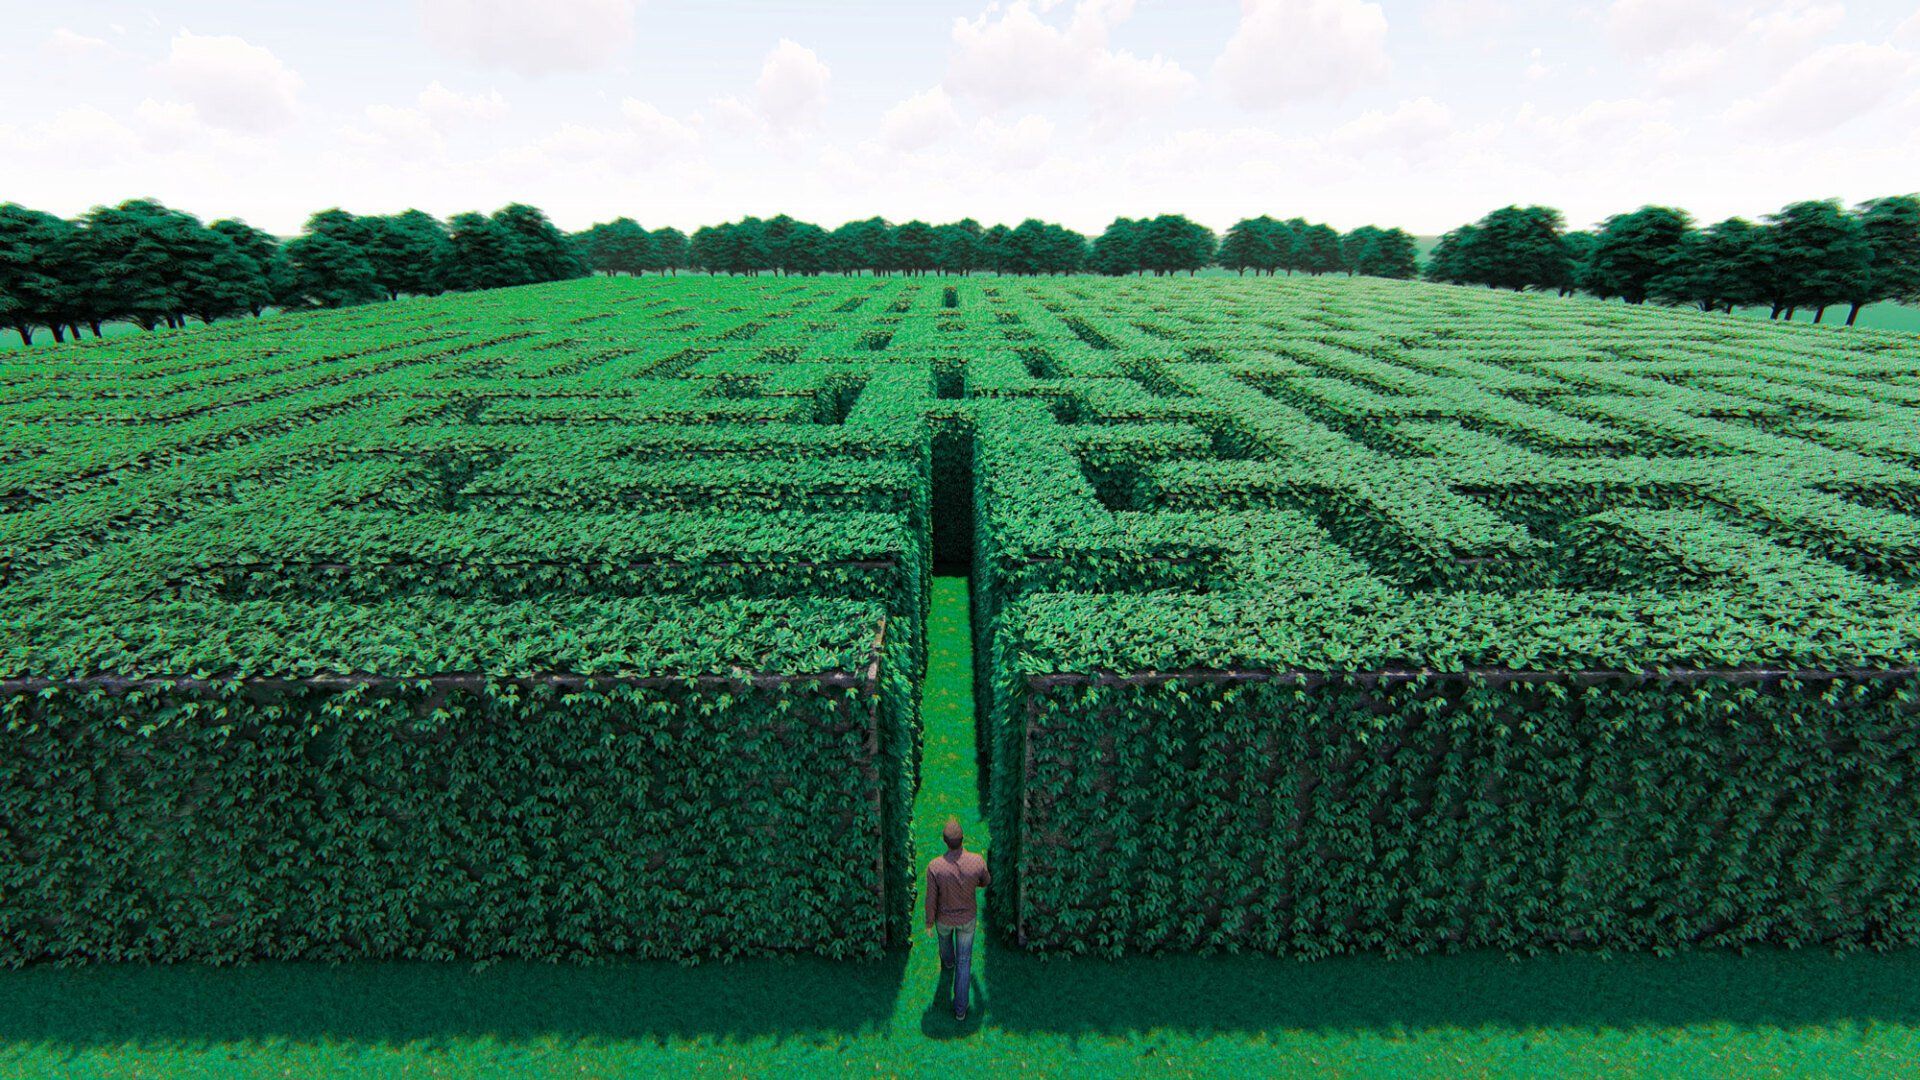 persona inquadrata dall'alto, che sta per entrare in un enorme labirinto di siepi verdi